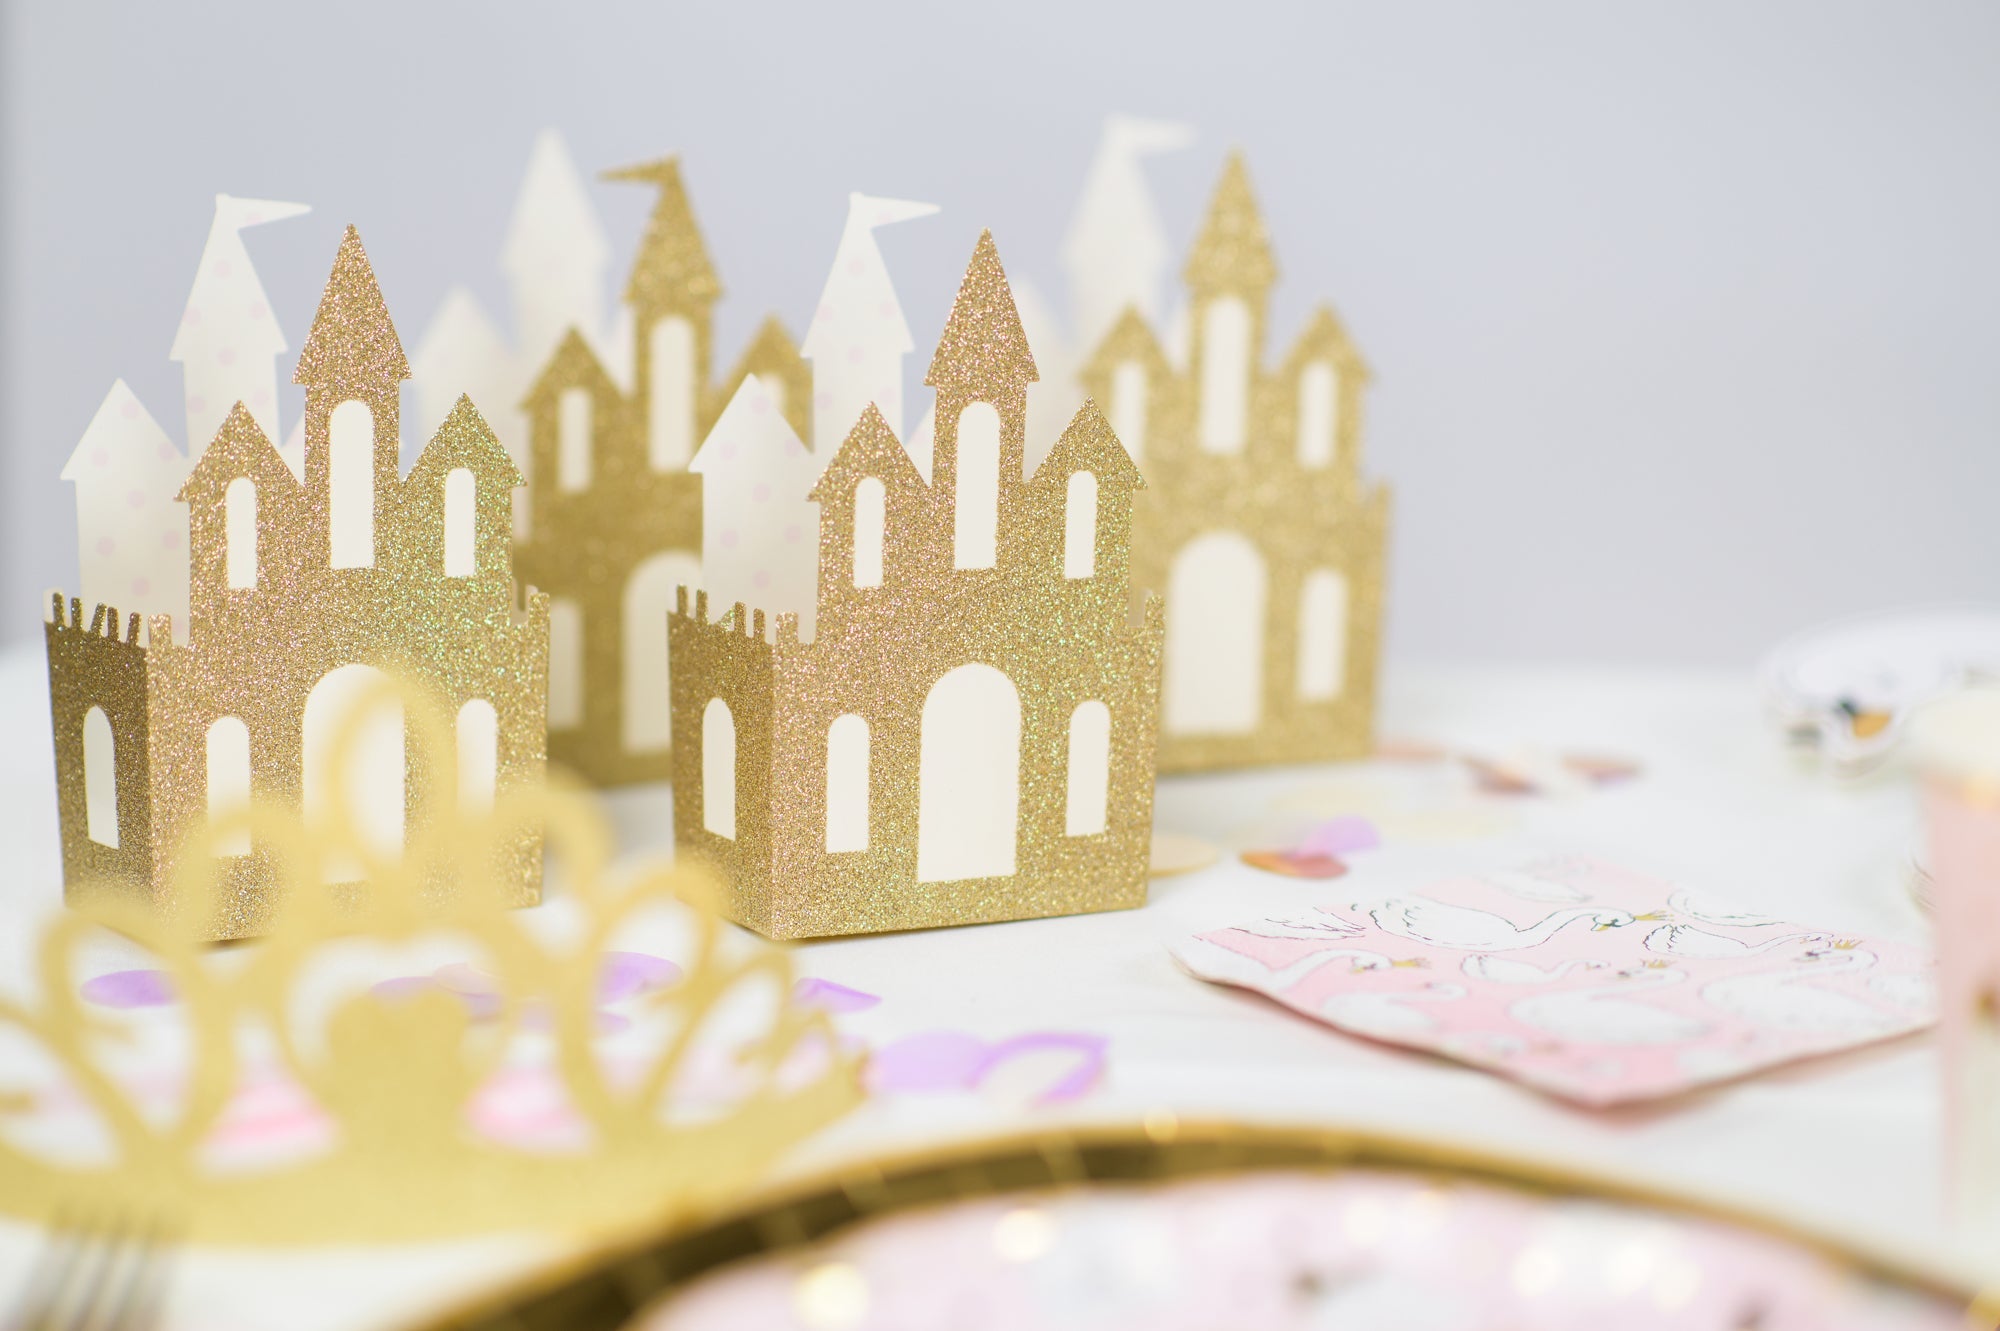 Princess Party Castle Favor Boxes - Gold Glitter